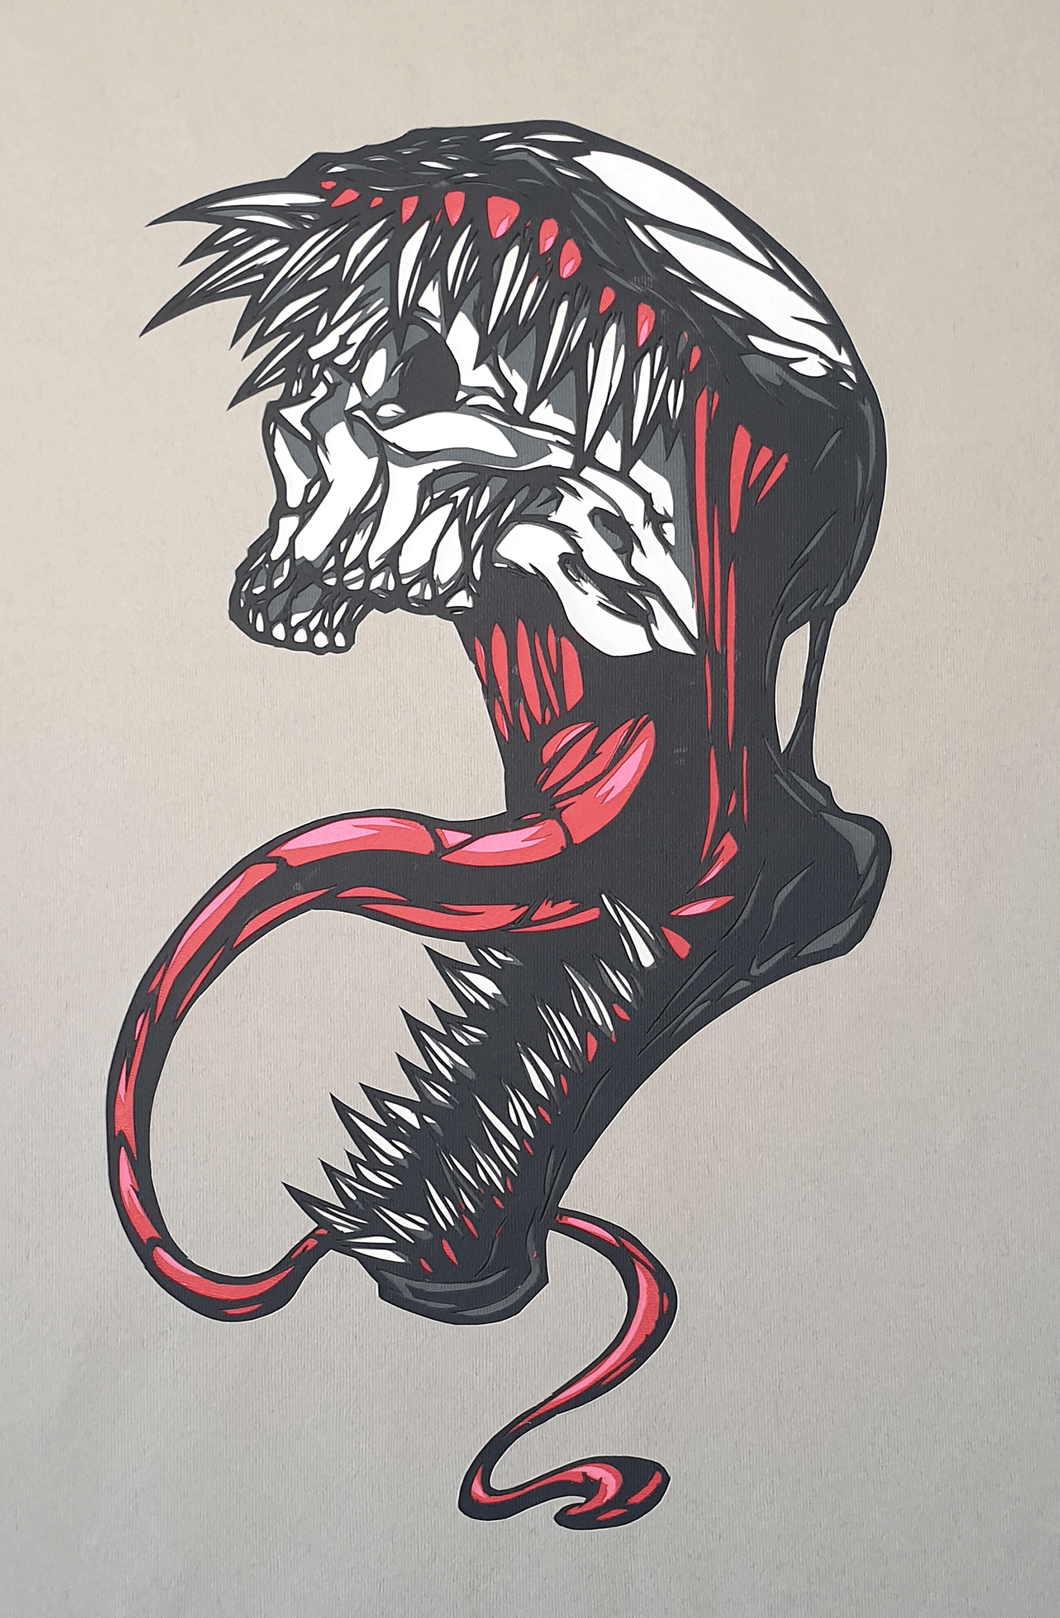 Venom Skull by Rick Sharif [A3 Size (297 x 420 mm) (11.7 x 16.5 in)]